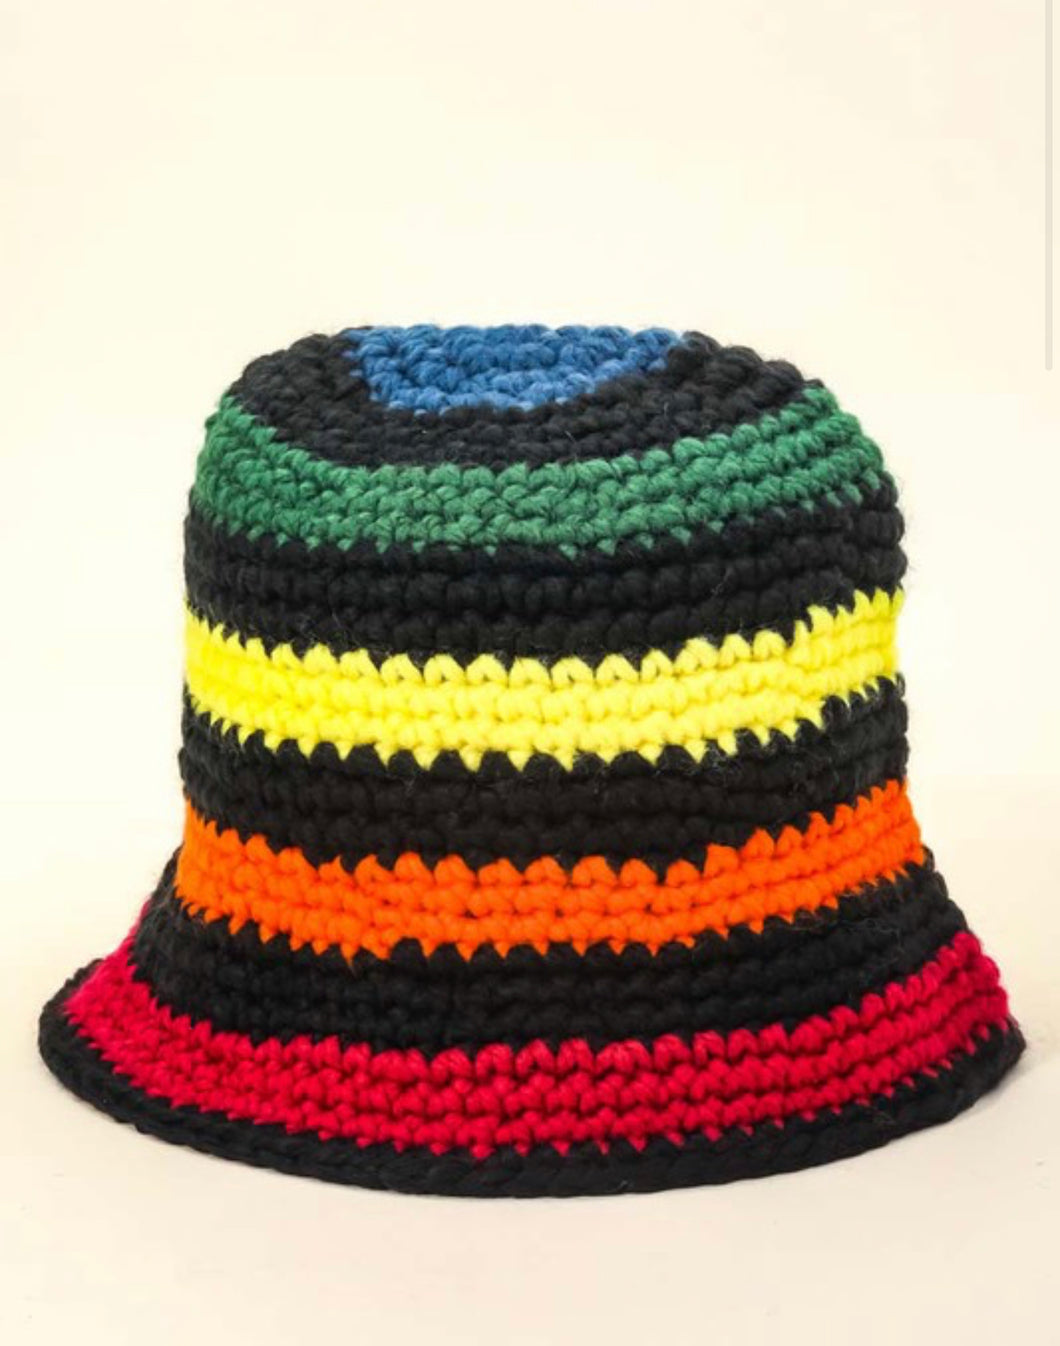 Striped Bucket Hat